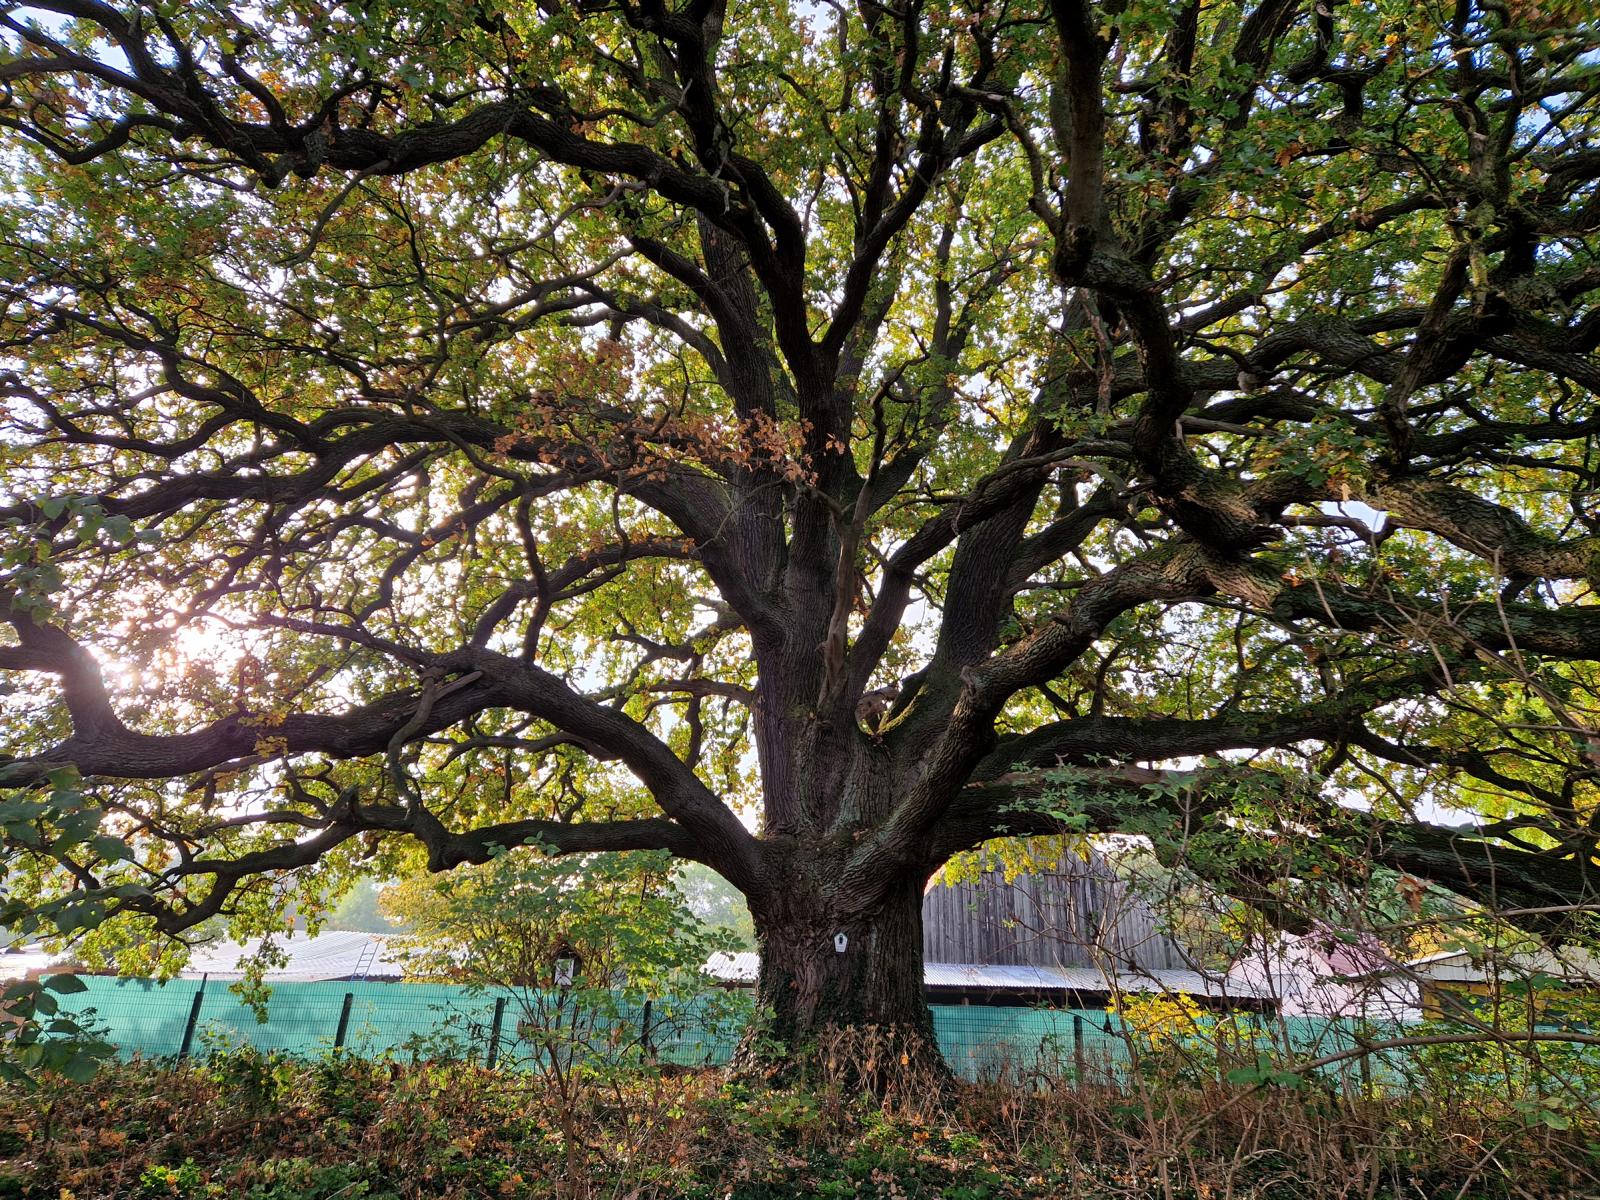 Pfarreiche Klein Lübars: ein Wald von Ästen bei beginnender Herbstfärbung Mitte Oktober